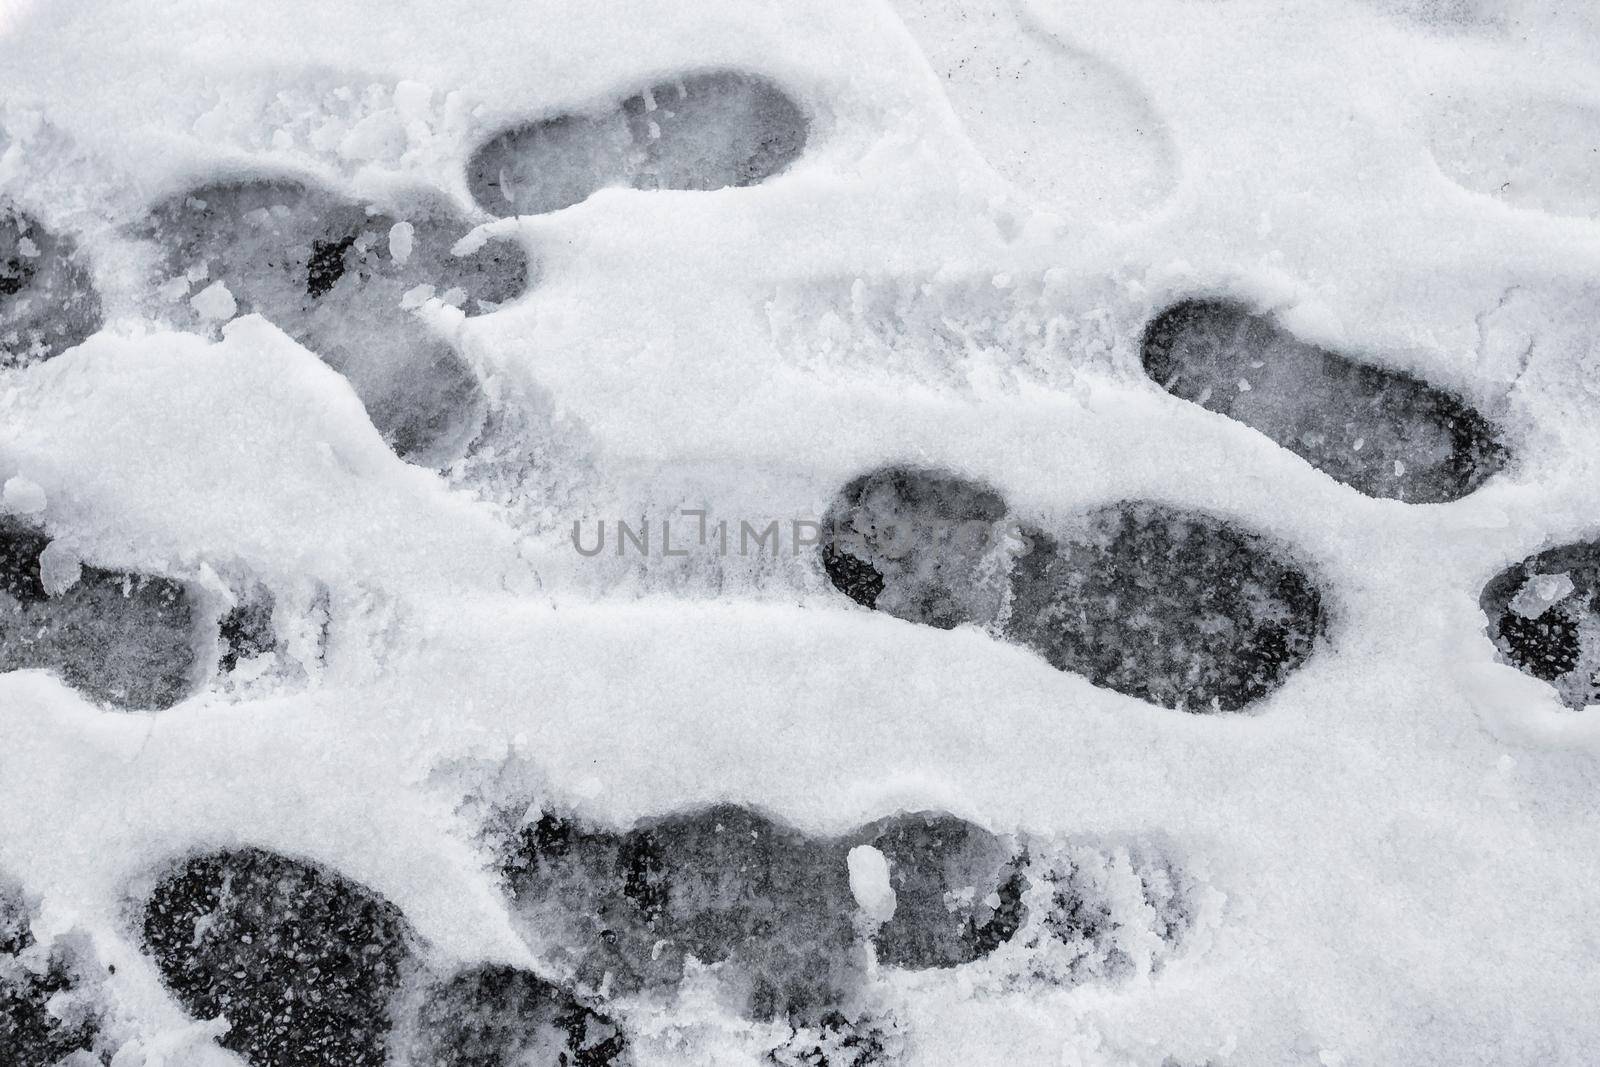 Lots of footprints in snow by germanopoli